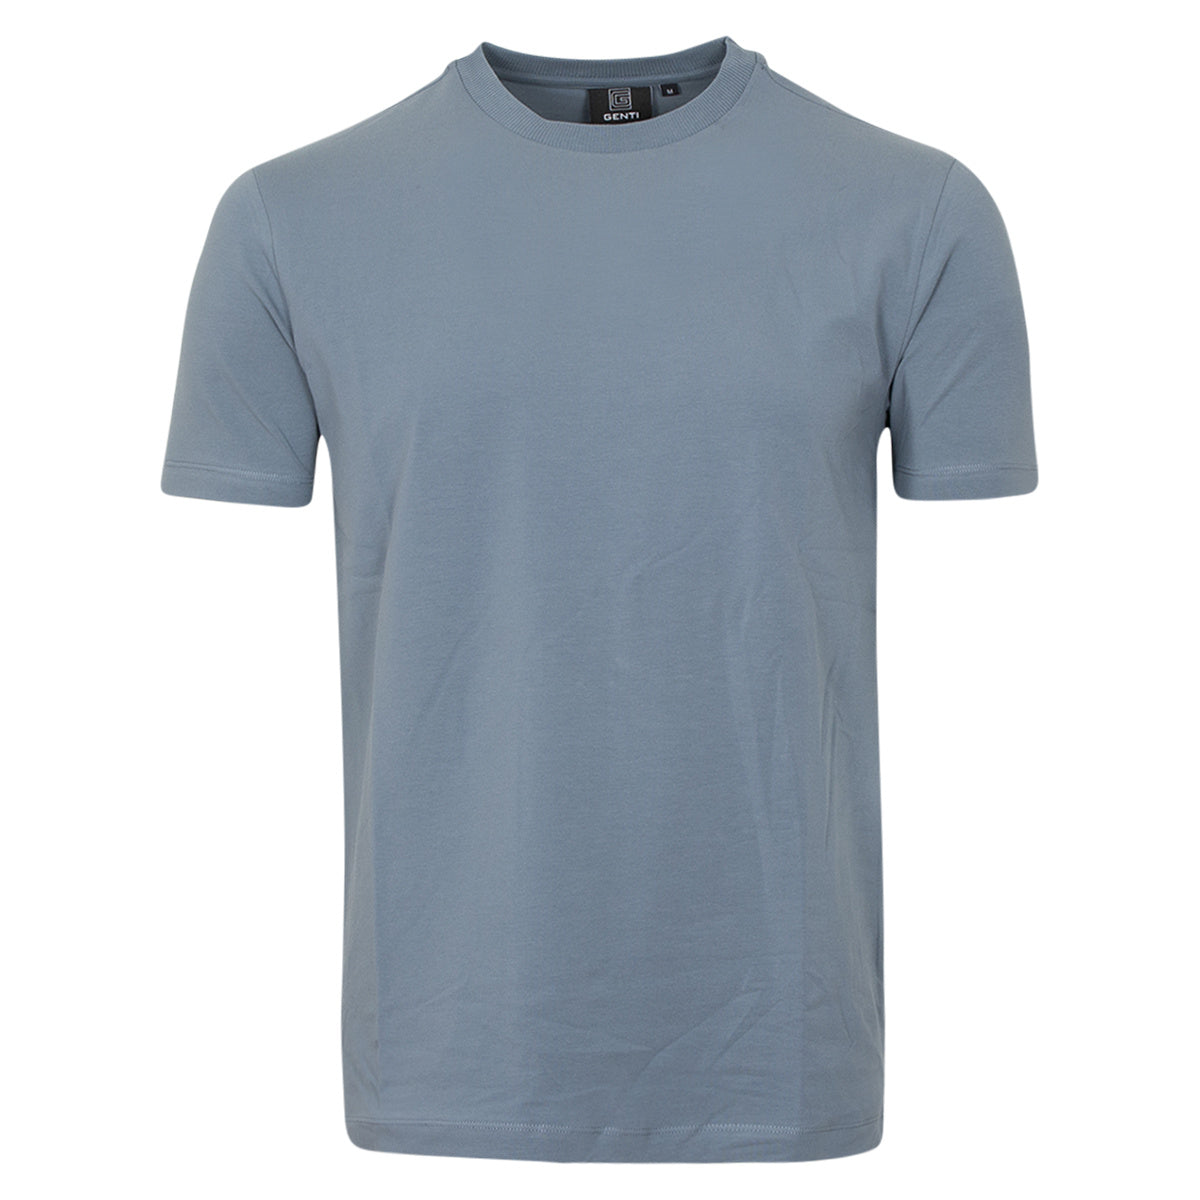 Genti T-shirt blauw